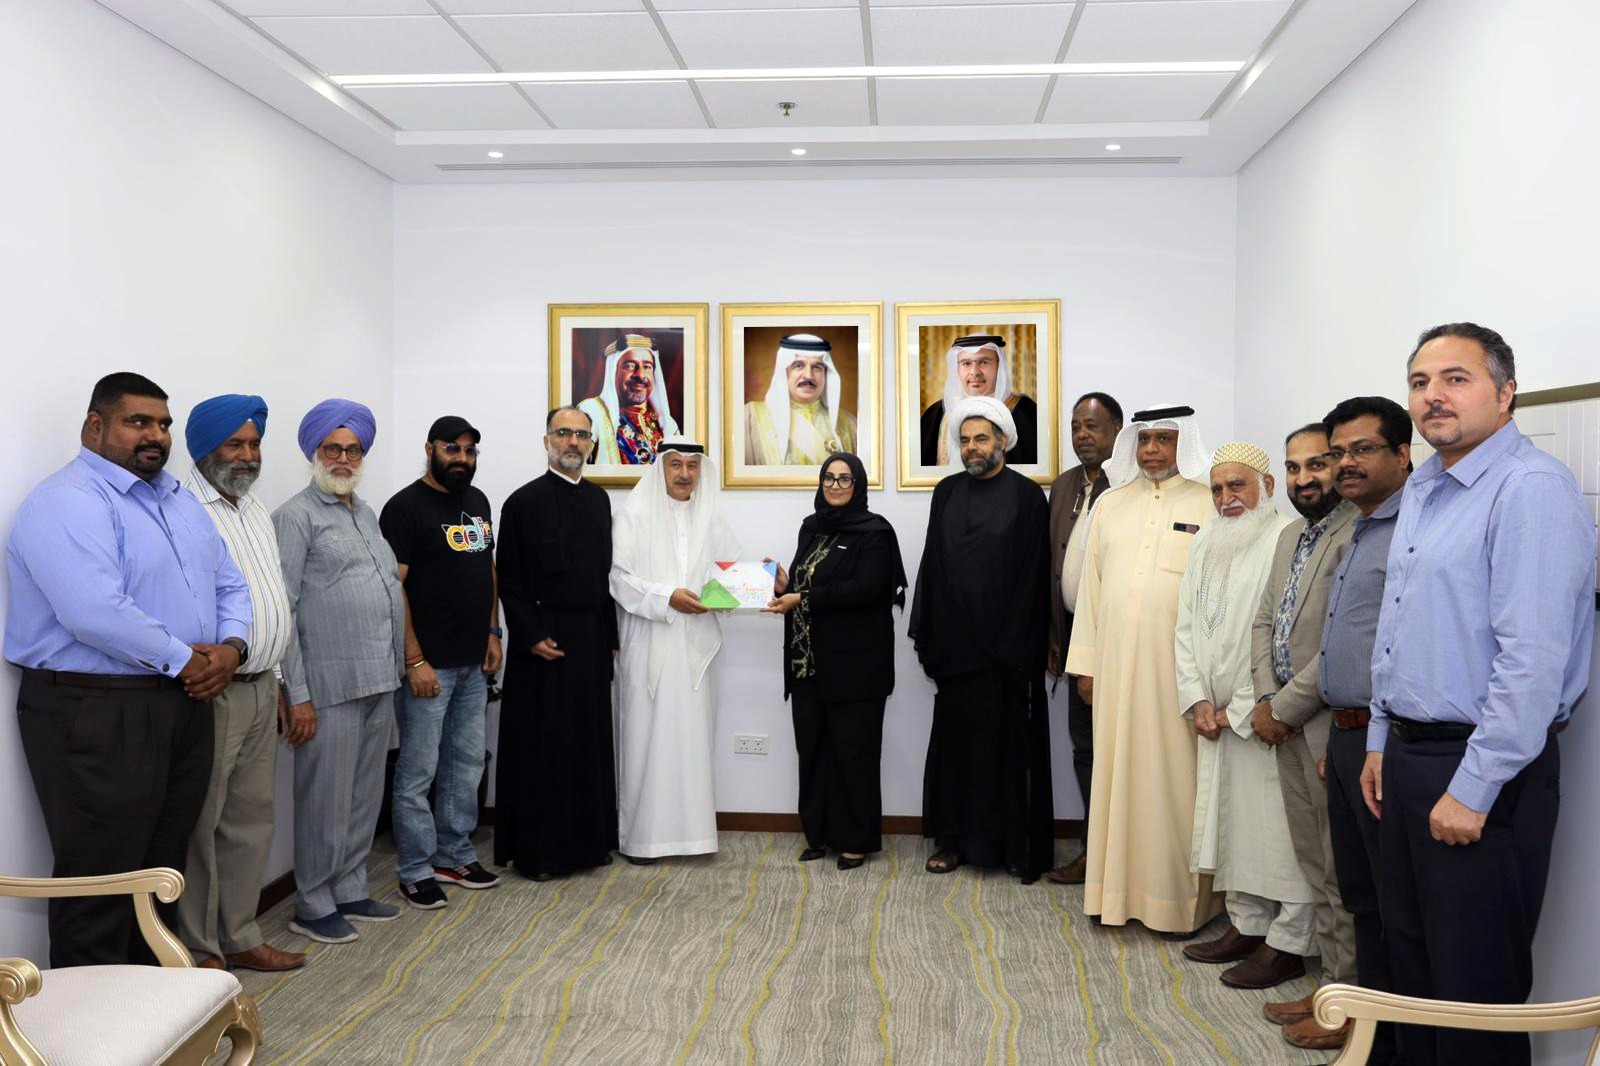 وزيرة الصحة تستقبل رئيس مجلس إدارة جمعية البحرين للتسامح وتعايش الأديان